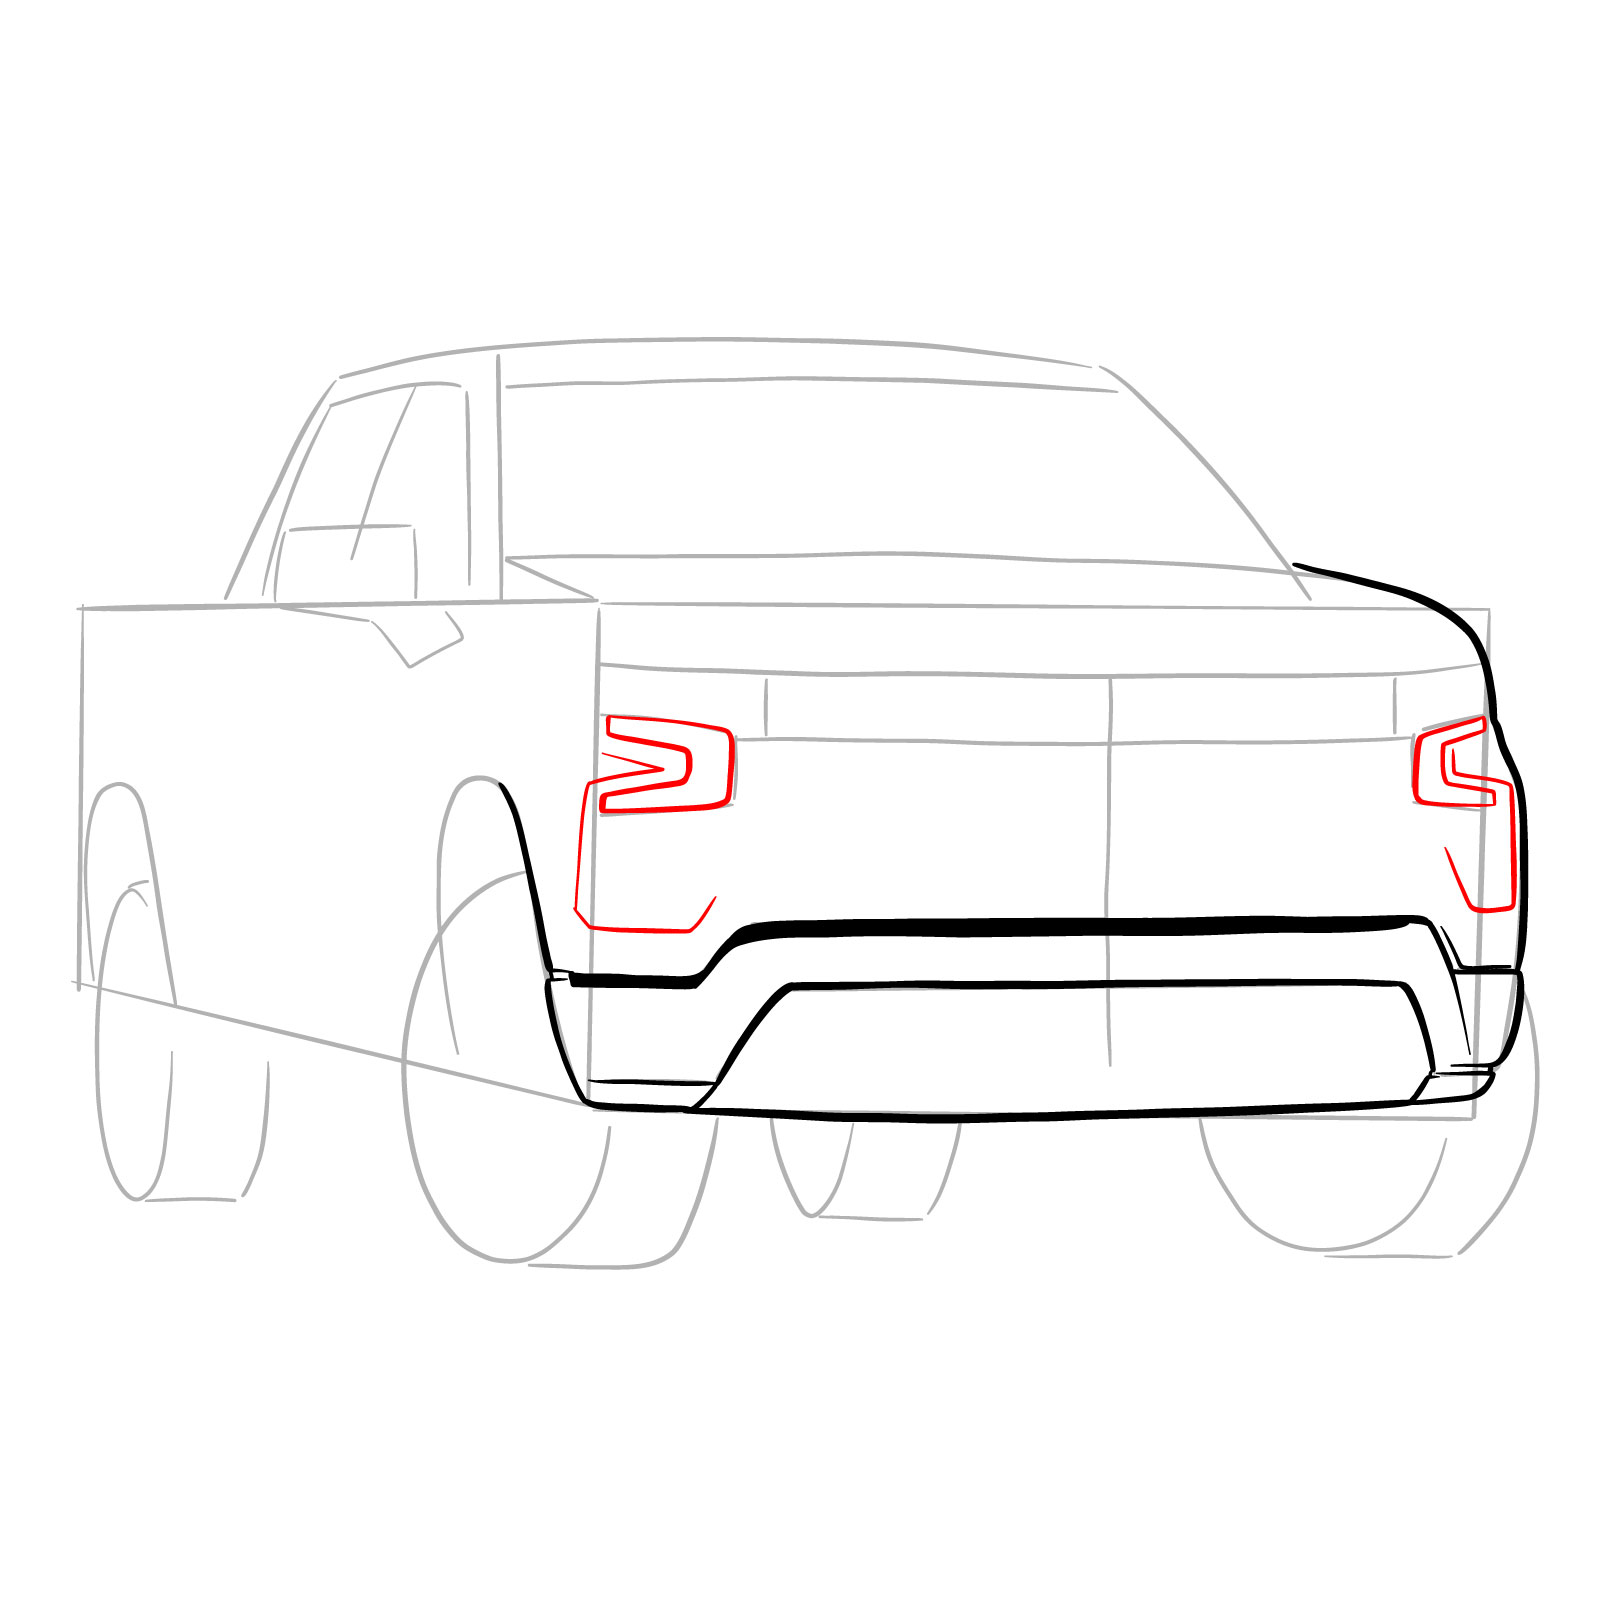 How to draw a 2022 Chevy Silverado - step 09